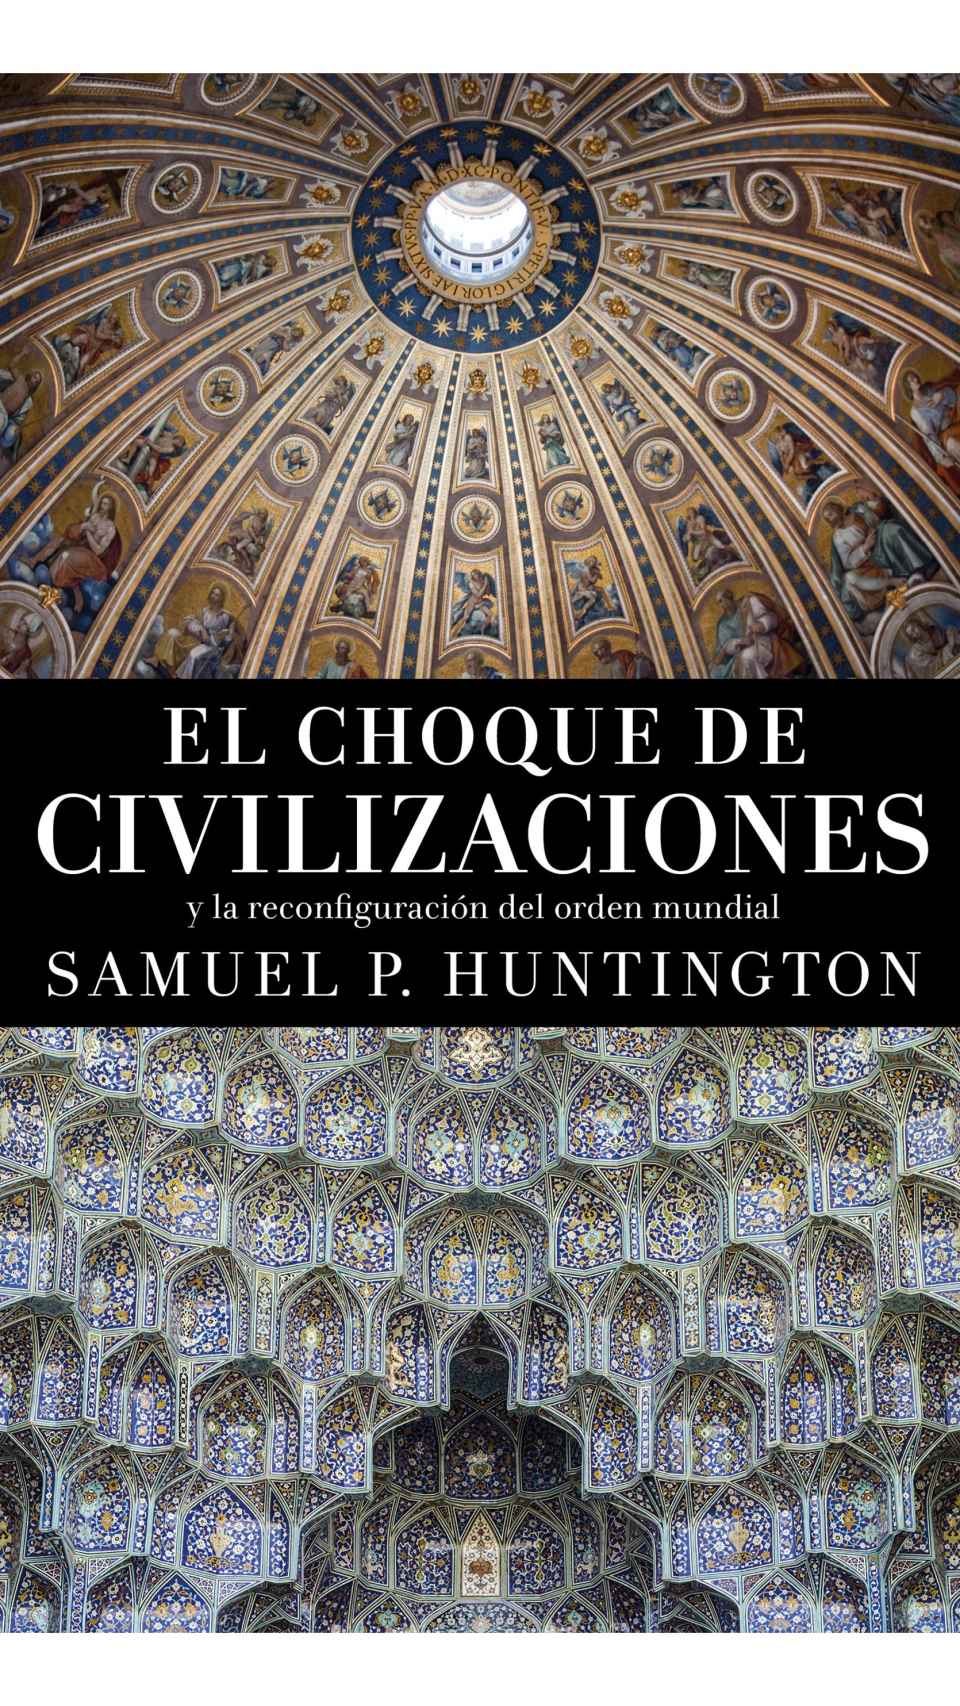 El choque de civilizaciones, de Samuel P. Huntington.